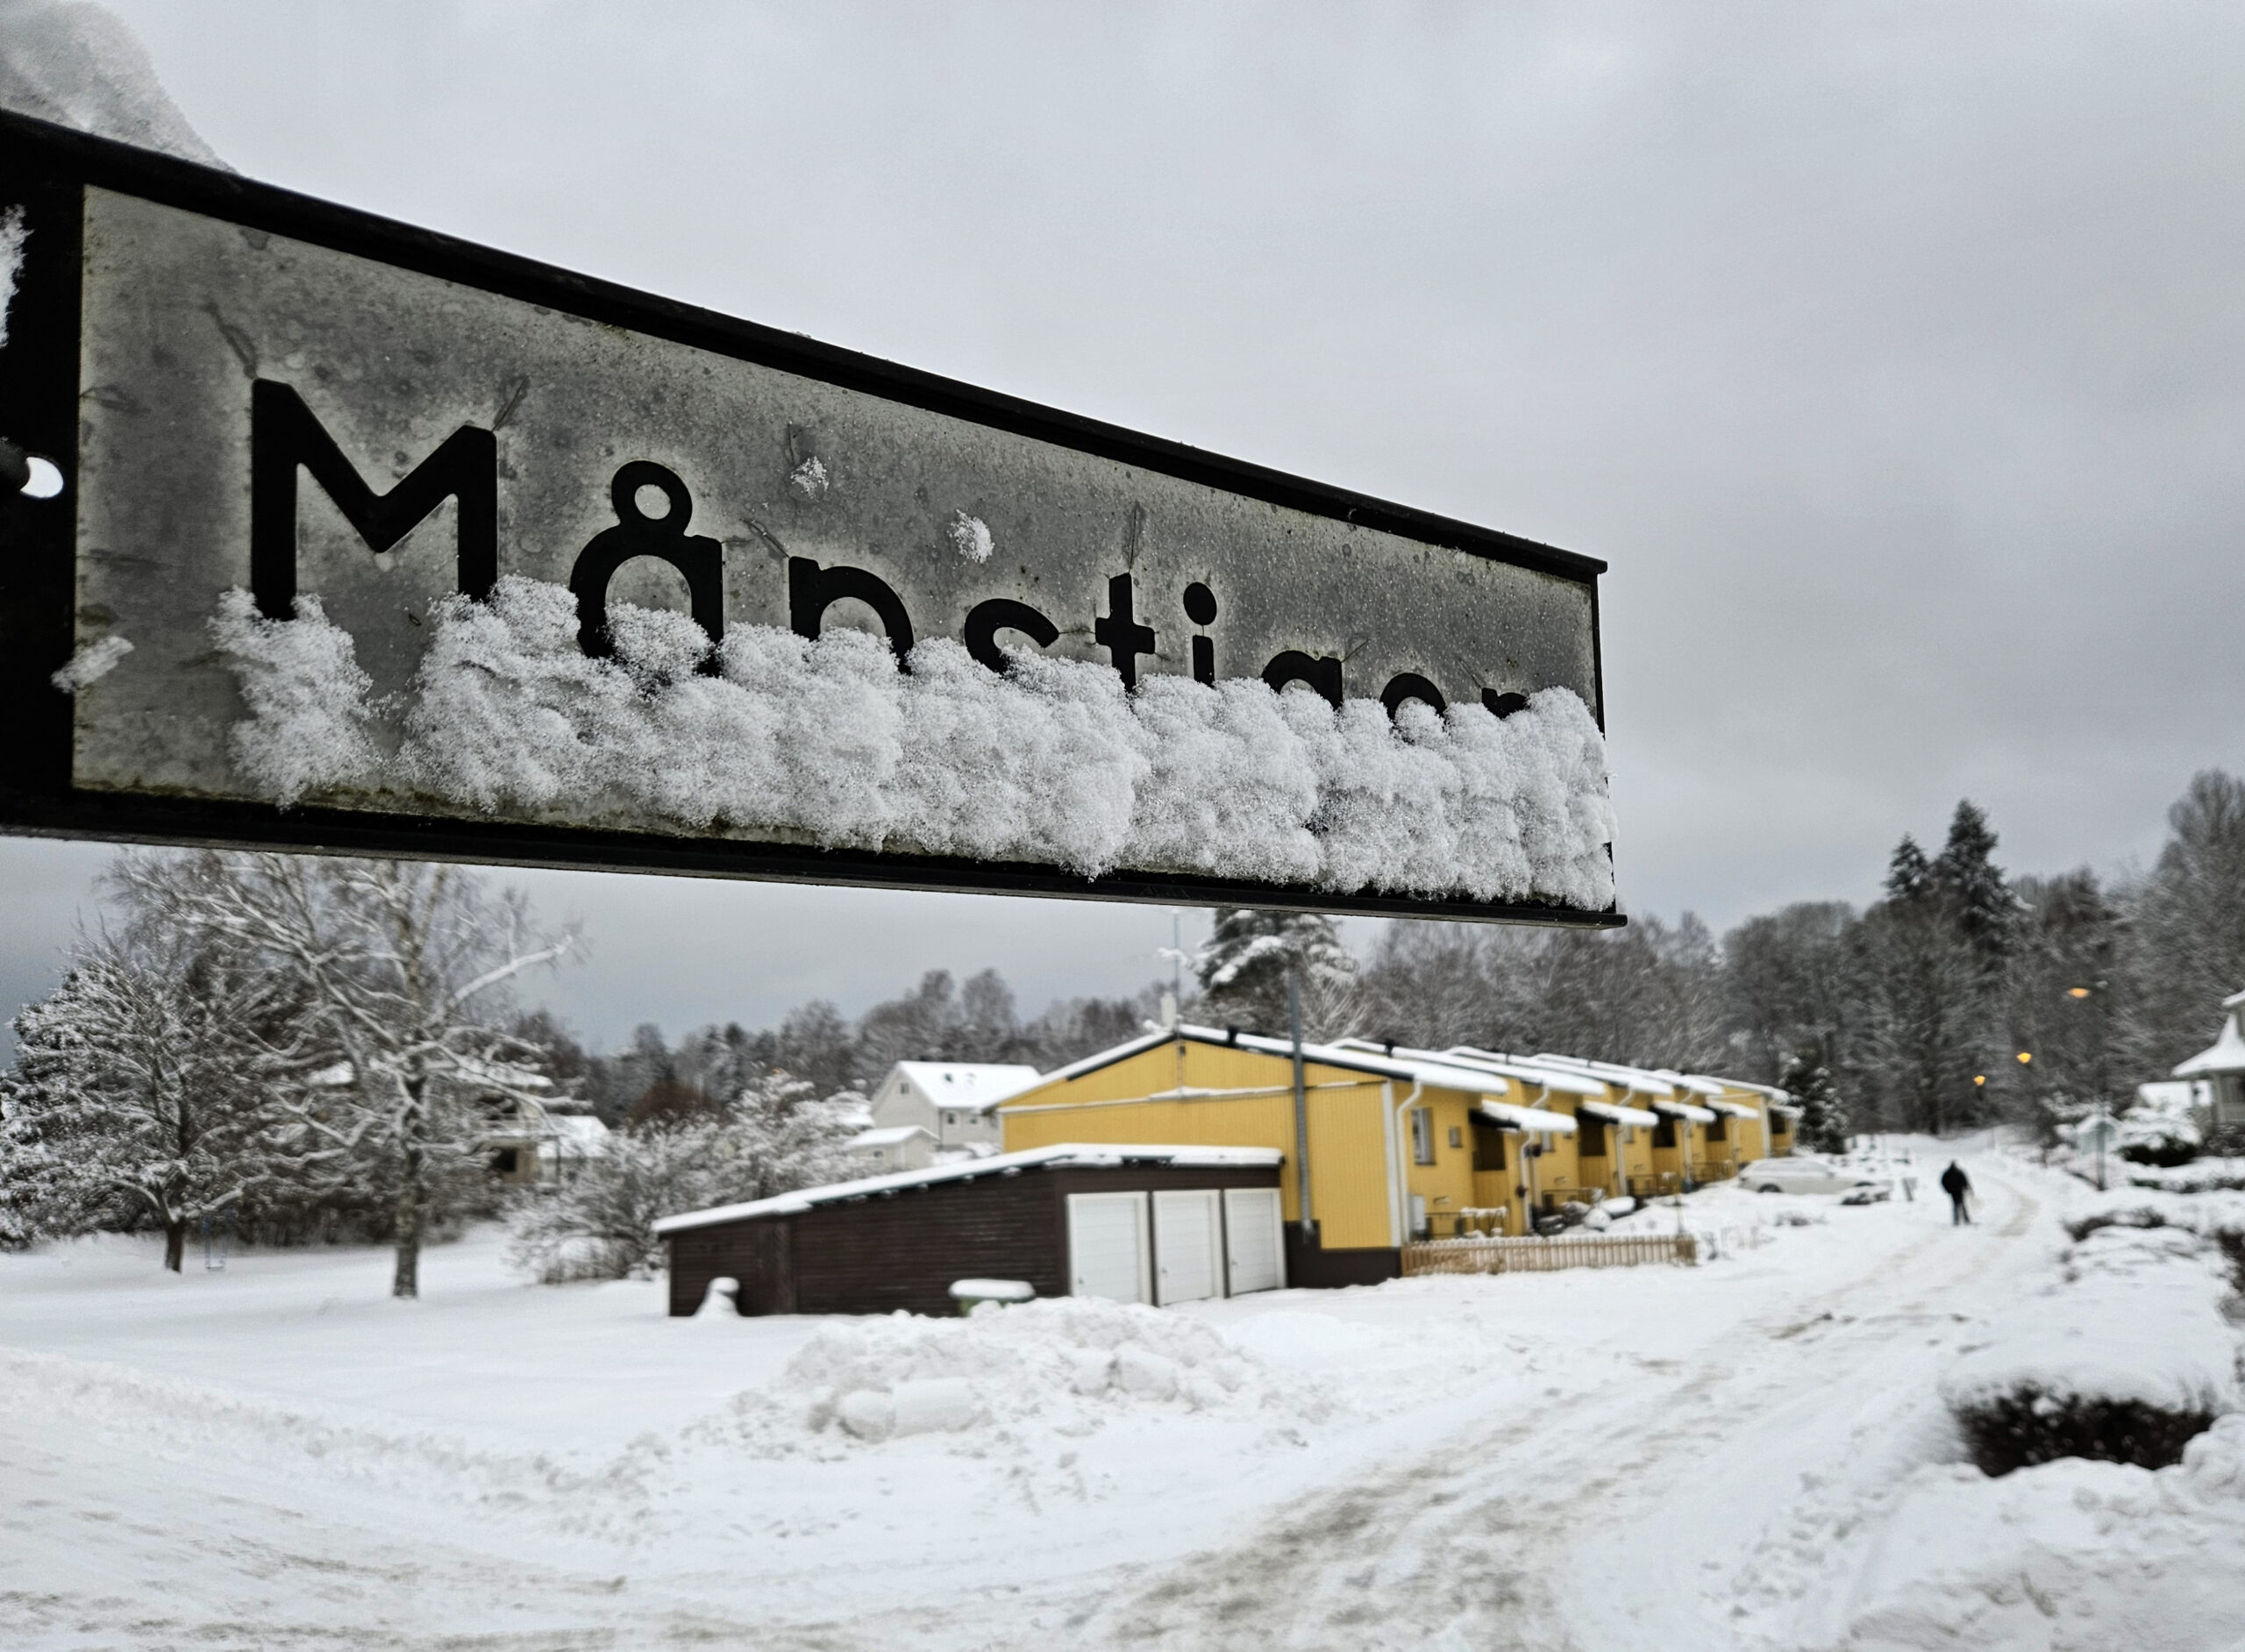 En vit och svart skylt med texten "Månstigen" som döljs av snö i nederkant. I bakgrunden några gula hyresradhus.